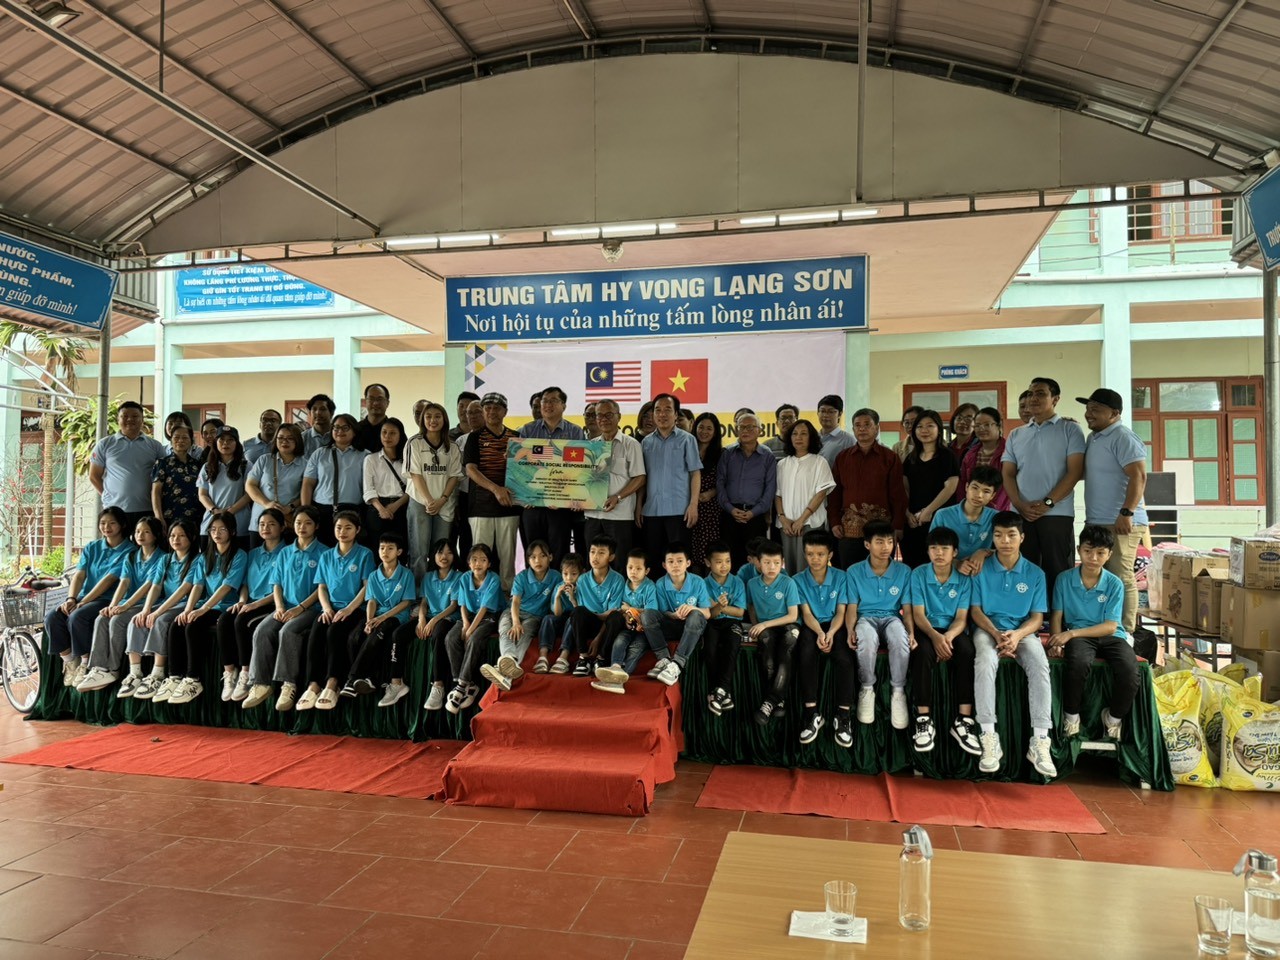 Đoàn thiện nguyện chụp ảnh cùng các trẻ ở Trung tâm Hy vọng Lạng Sơn.